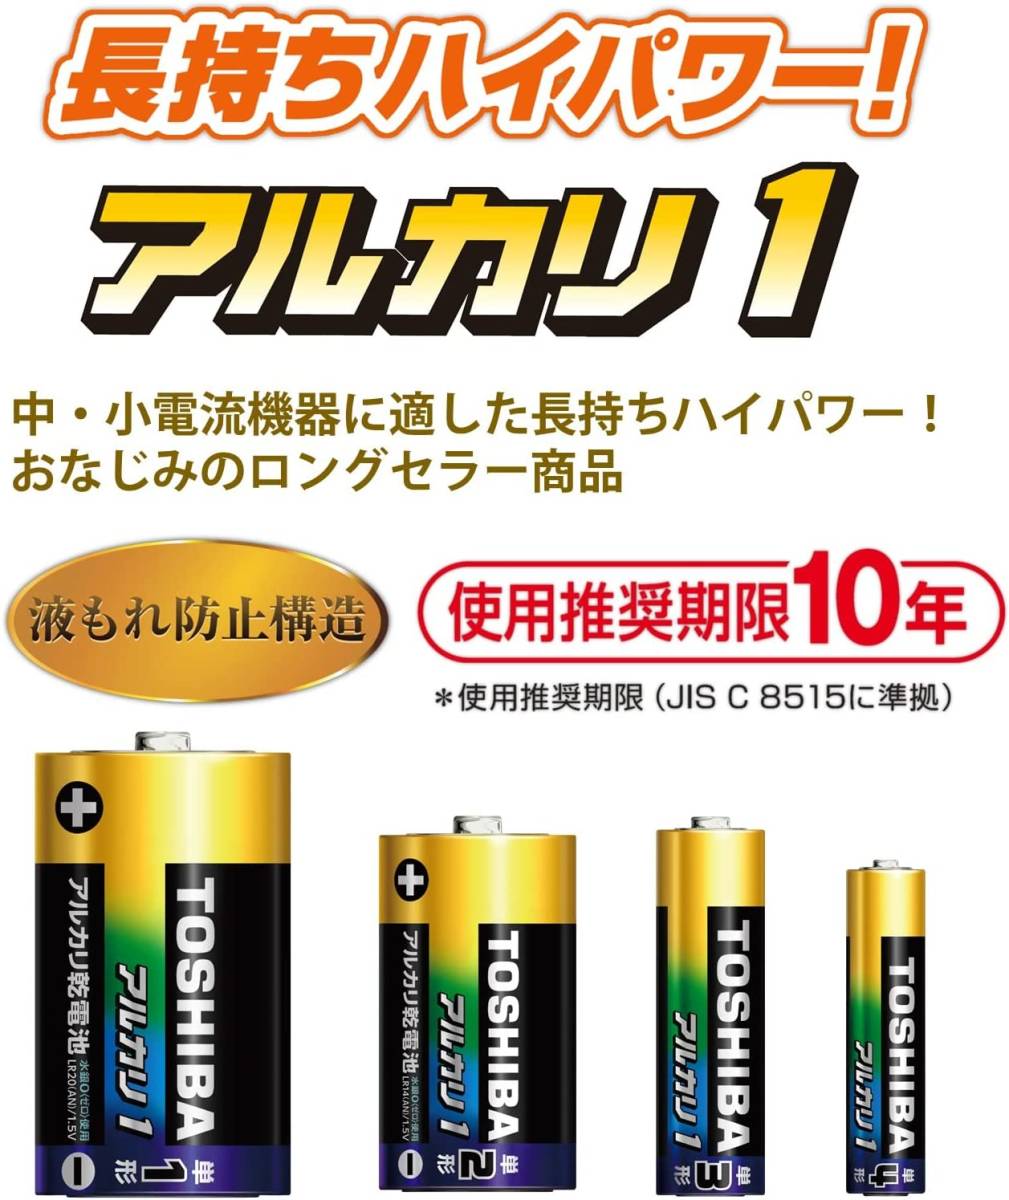 4本 ANシリーズ(アルカリ1) 東芝(TOSHIBA) アルカリ乾電池 単1形 4本入 1.5V 推奨期限10年 液漏れ防止構造_画像2